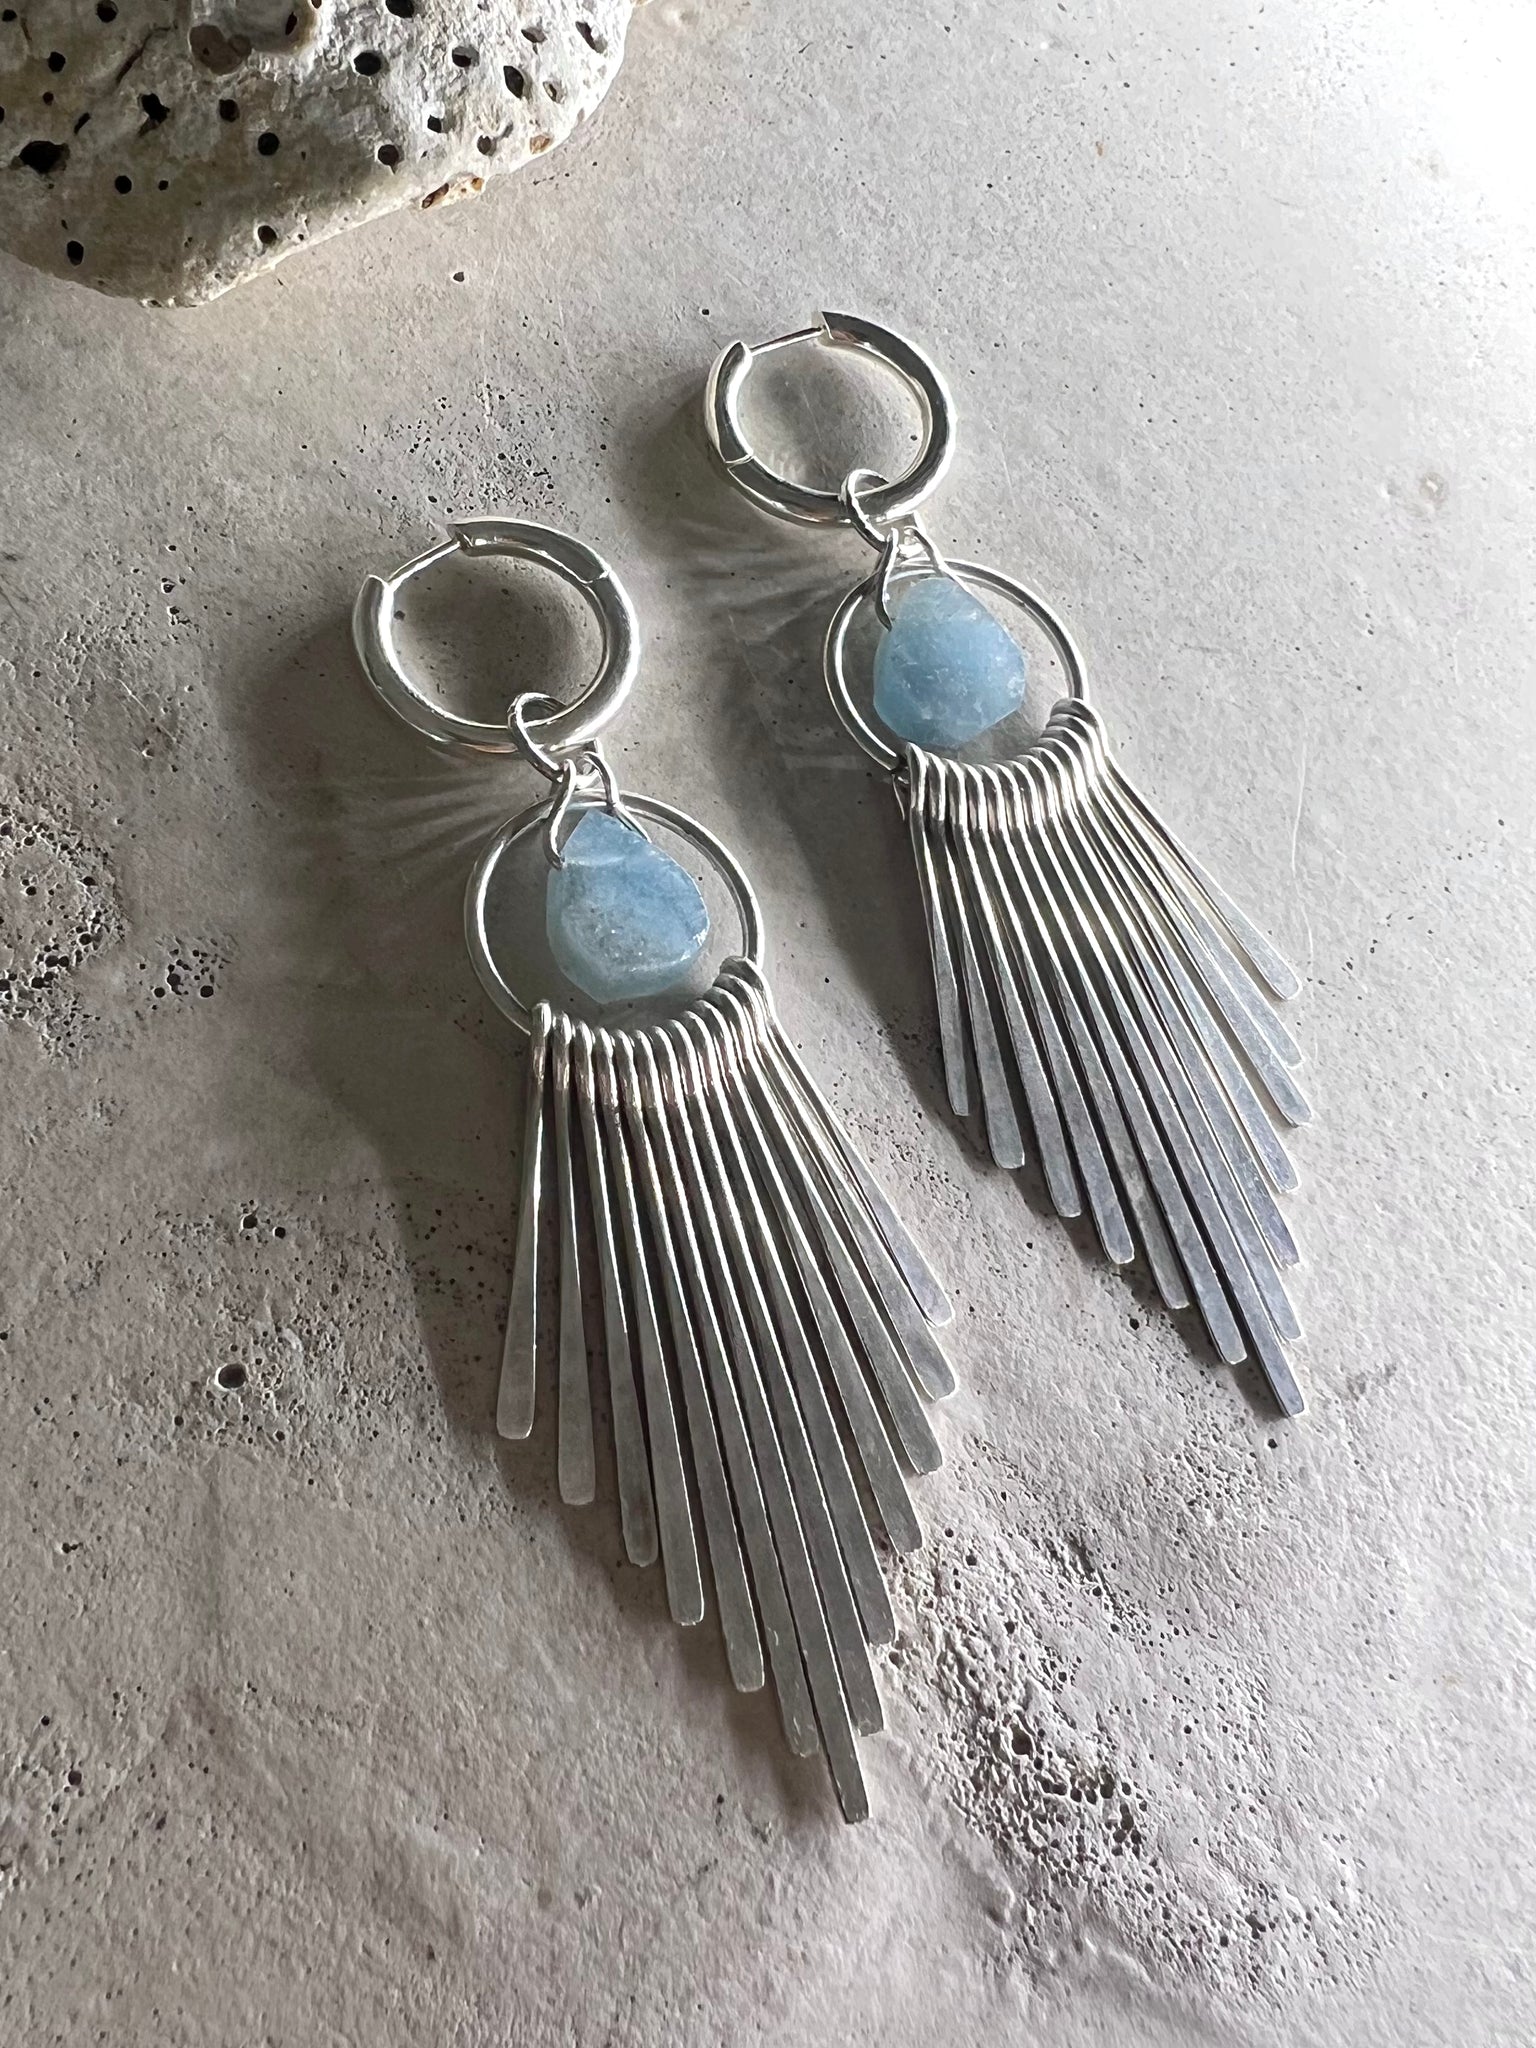 Blue Beryl earrings